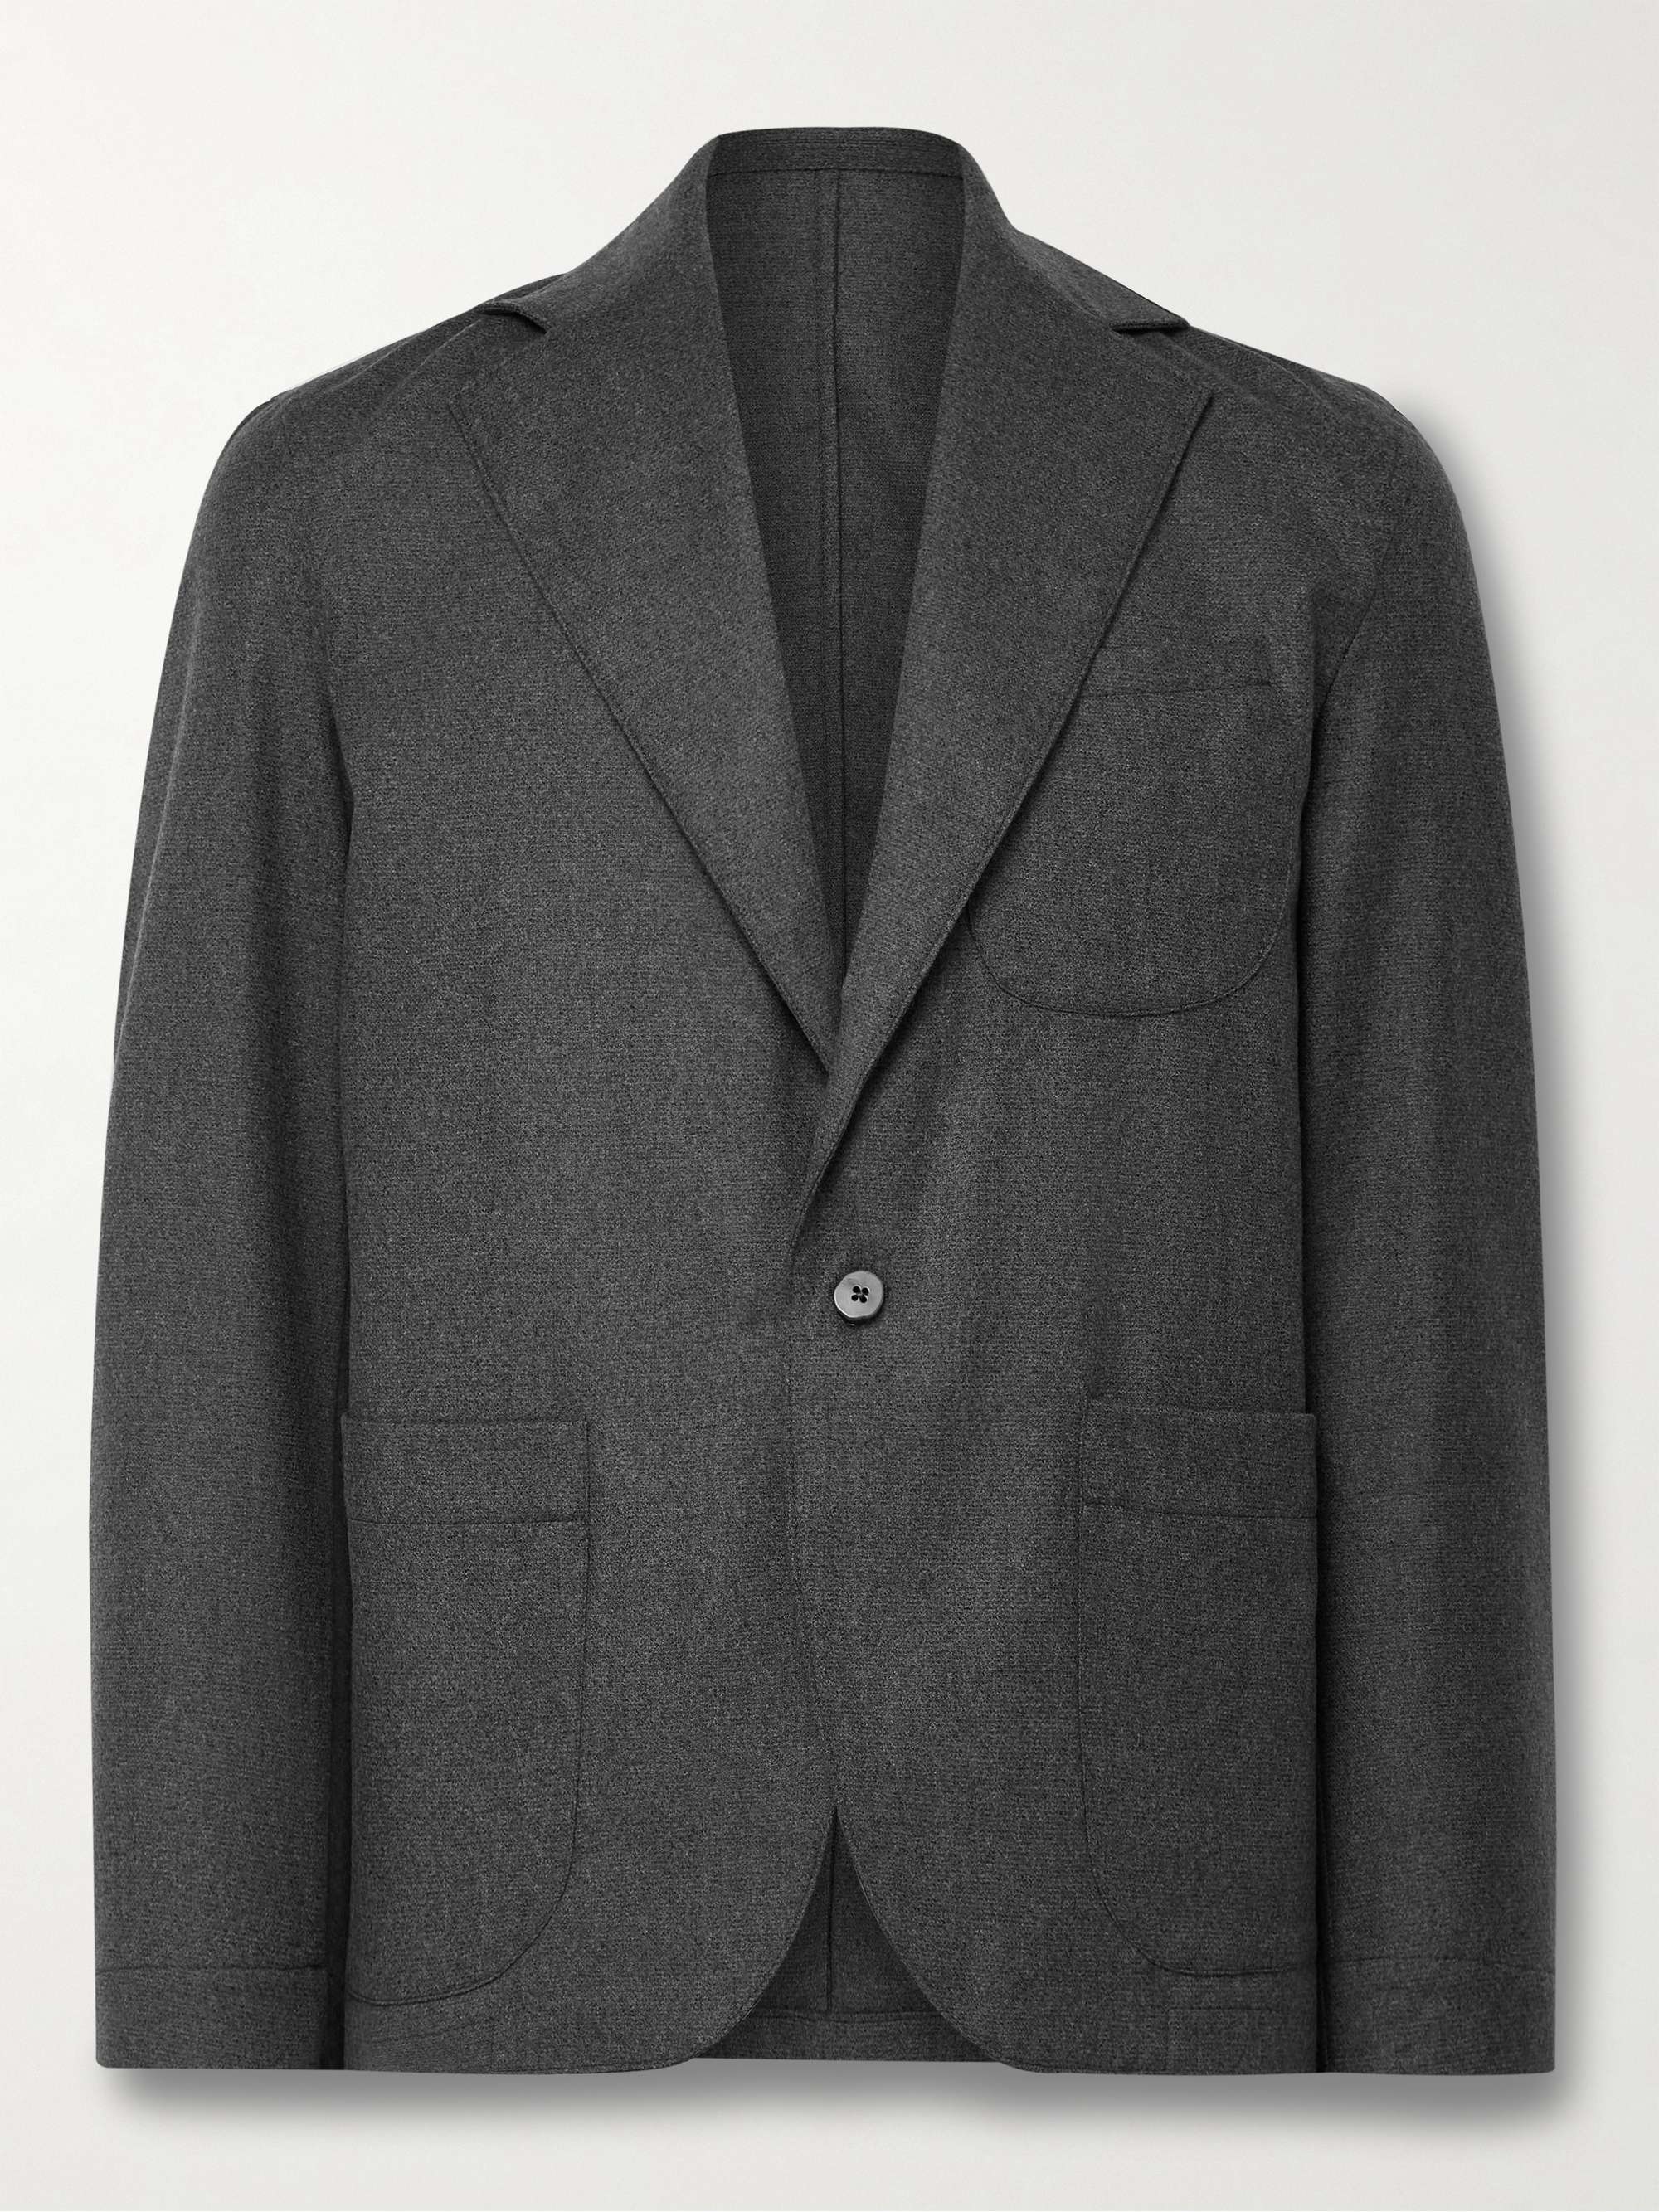 STÒFFA Wool-Flannel Suit Jacket for Men | MR PORTER